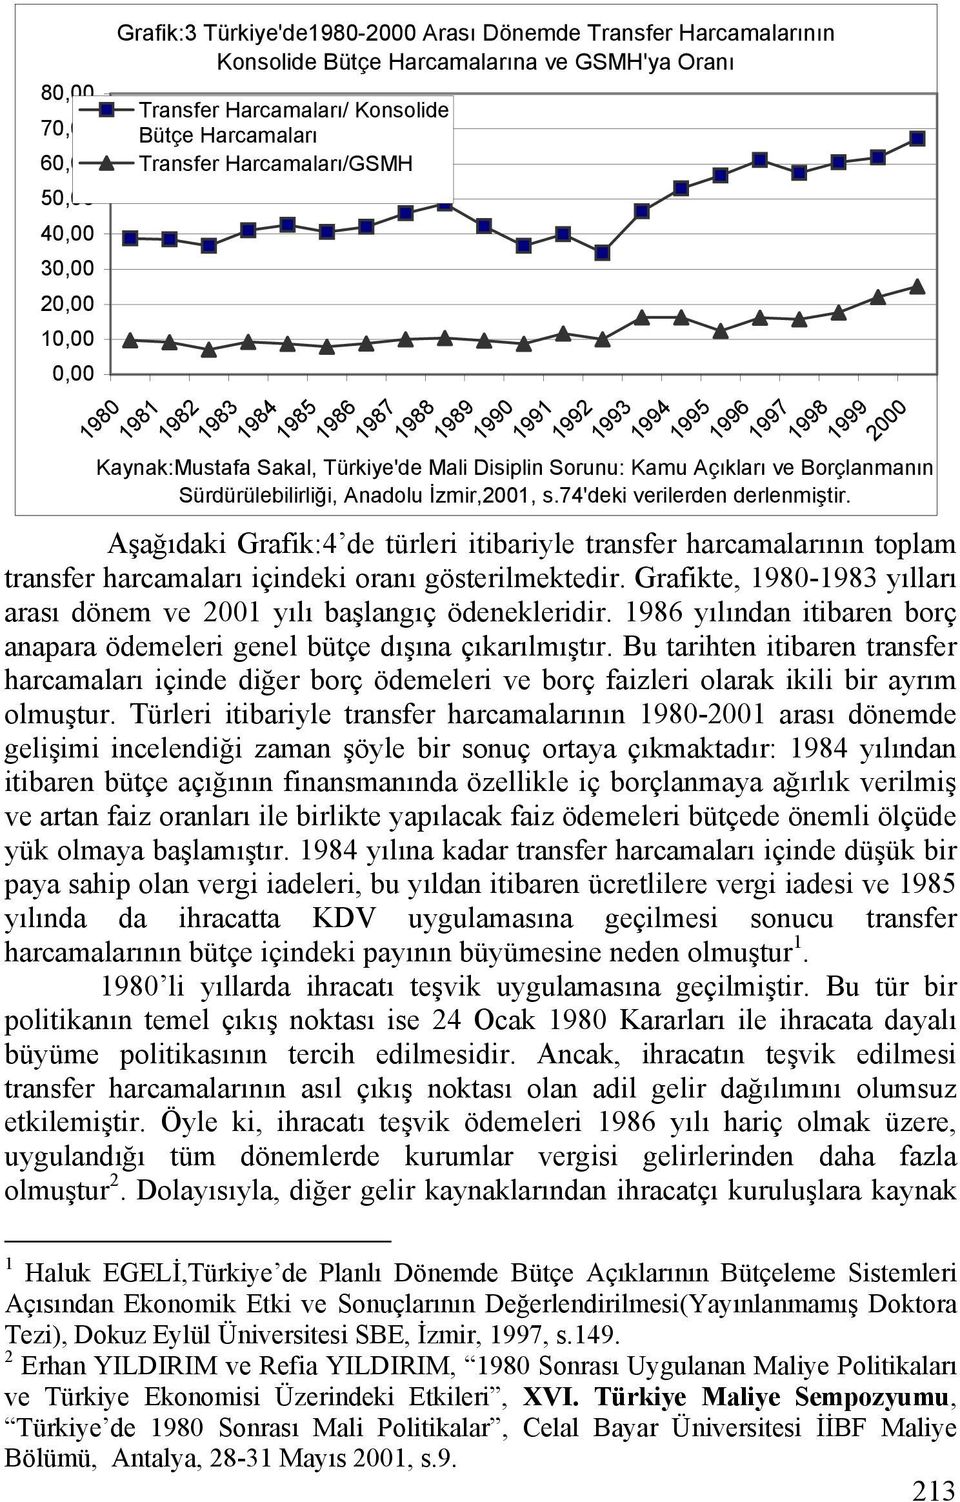 Sorunu: Kamu Açıkları ve Borçlanmanın Sürdürülebilirliği, Anadolu İzmir,2001, s.74'deki verilerden derlenmiştir.